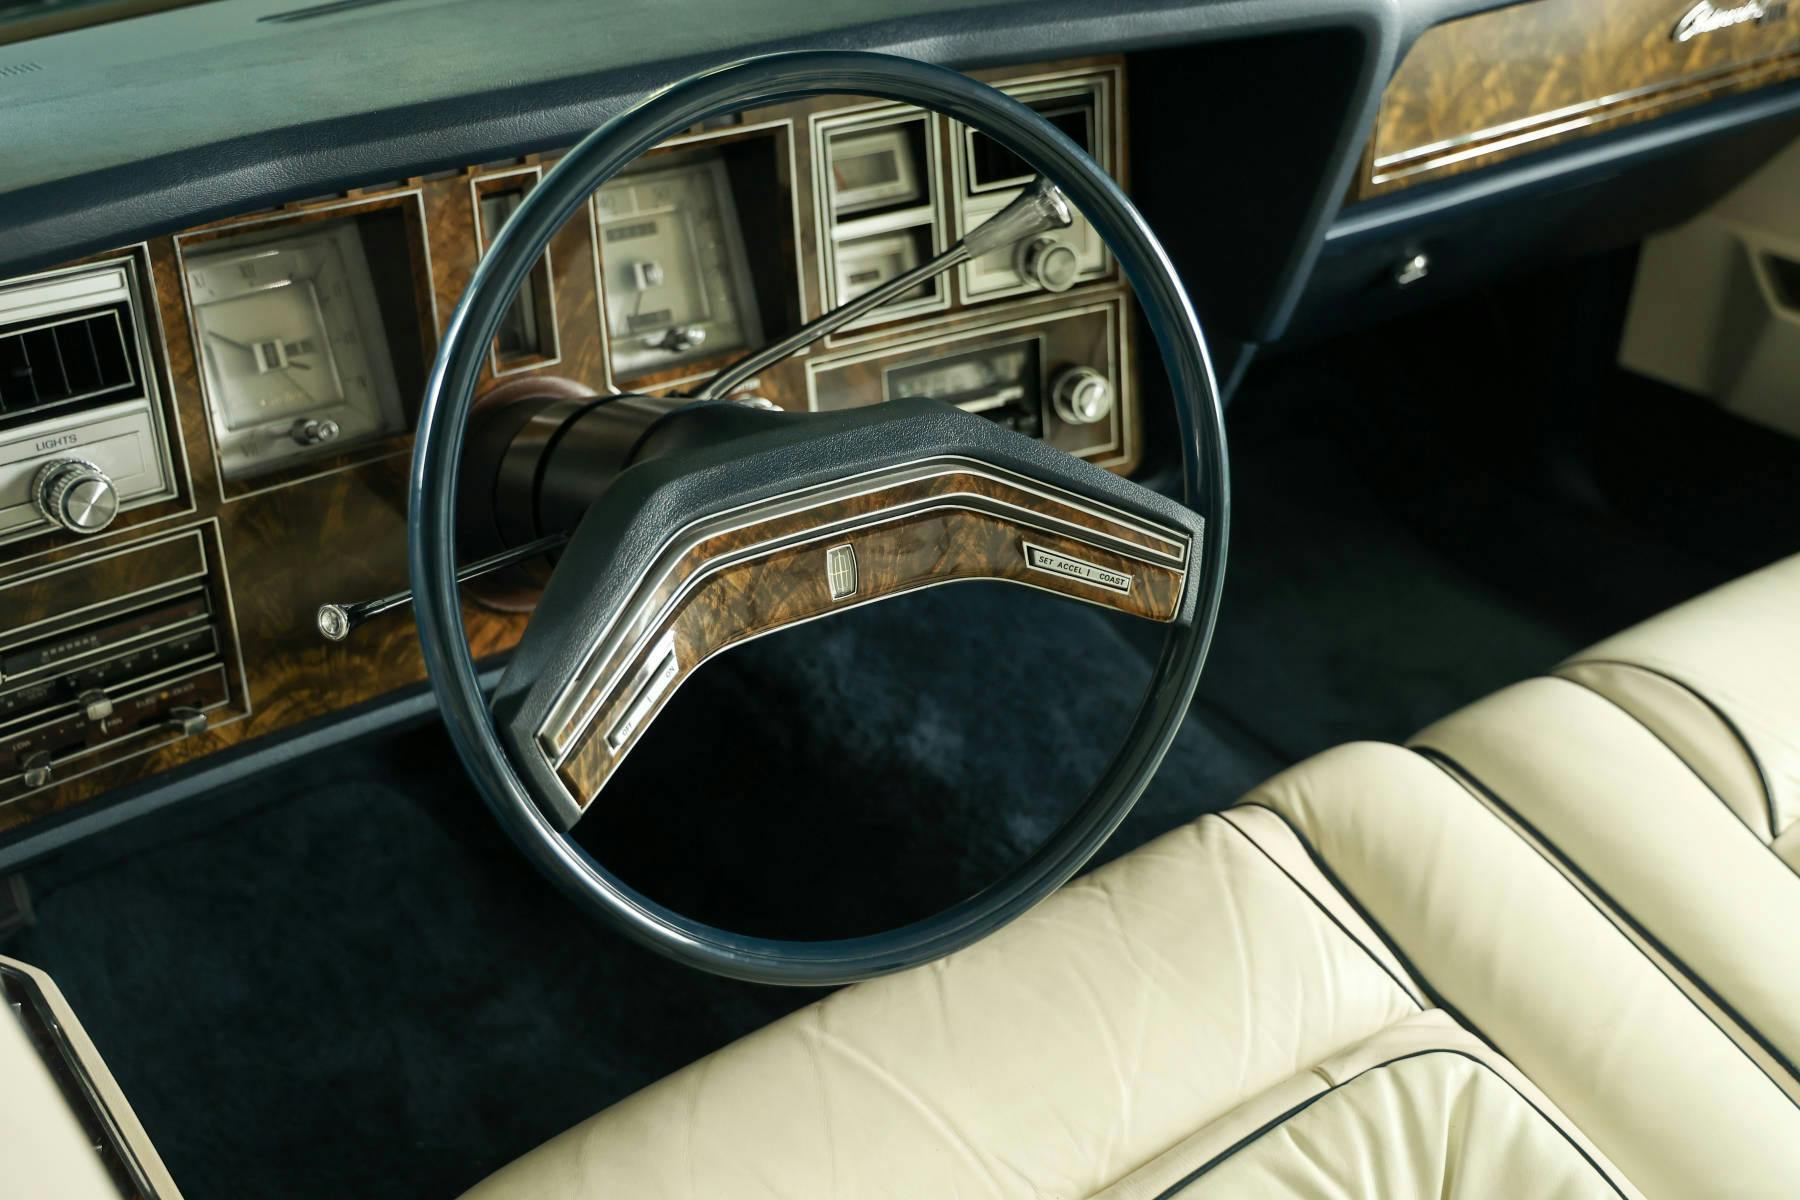 1979-Lincoln-Continental-Mark-V-Bill-Blass-Edition-steering-wheel